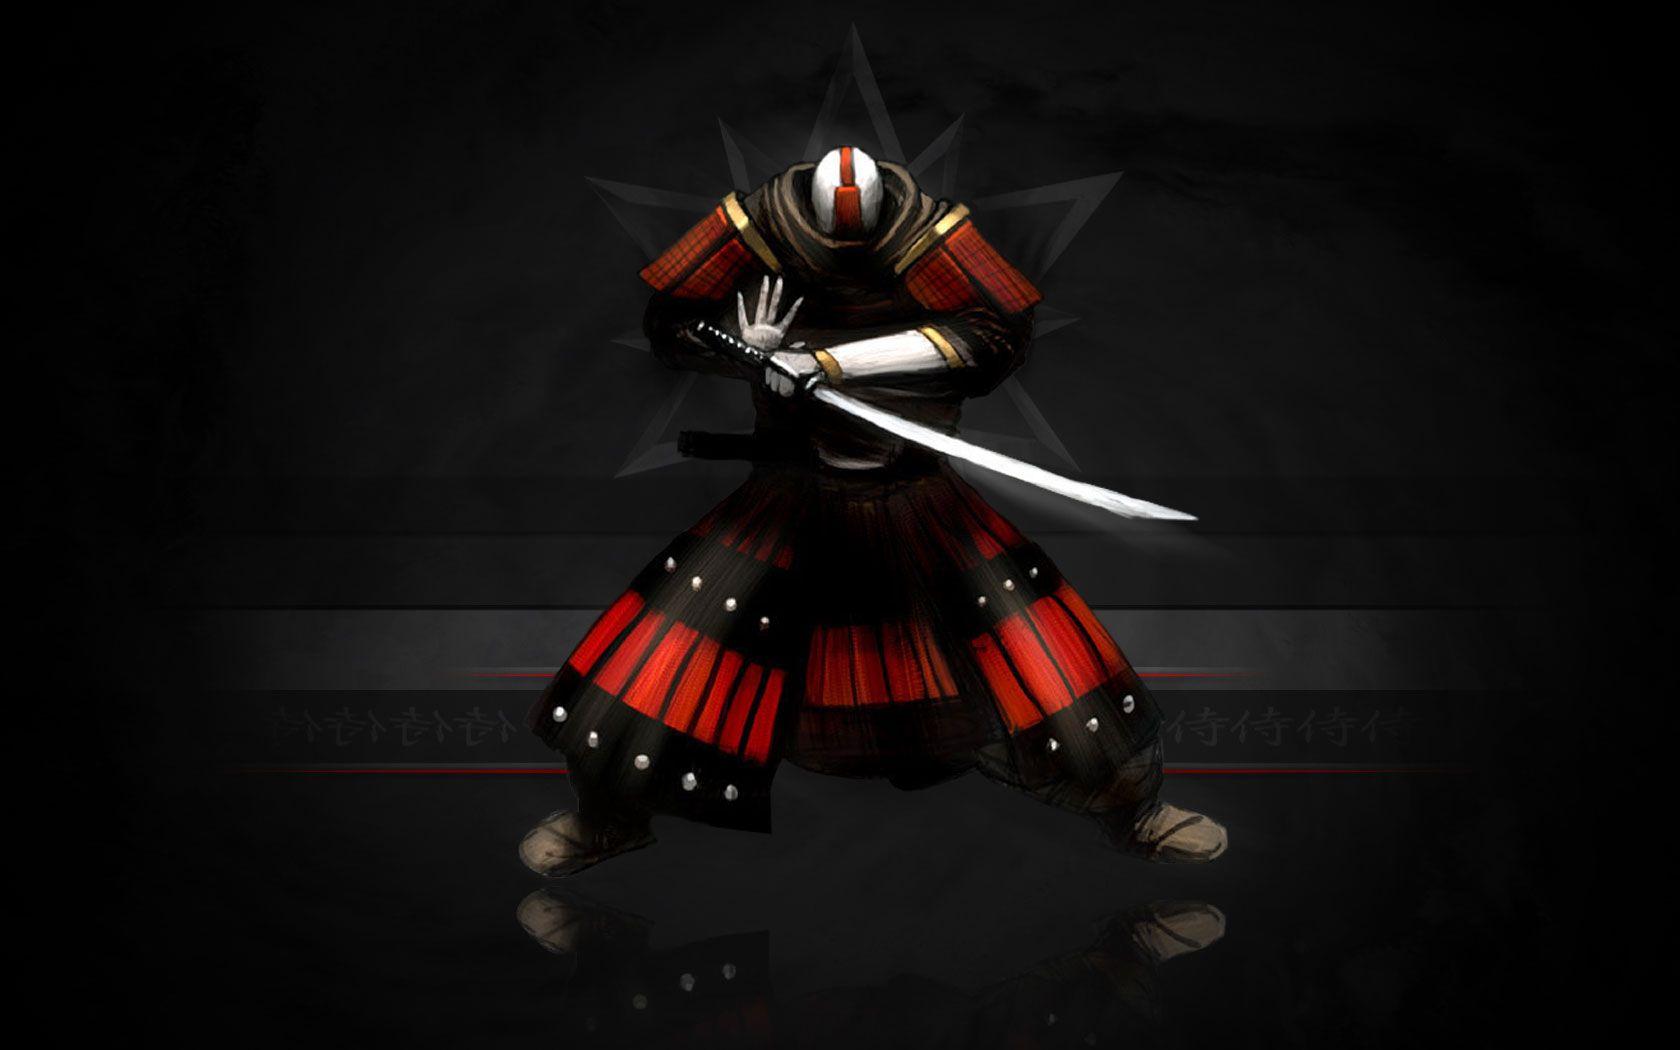 Samurai Desktop Wallpapers - Top Những Hình Ảnh Đẹp